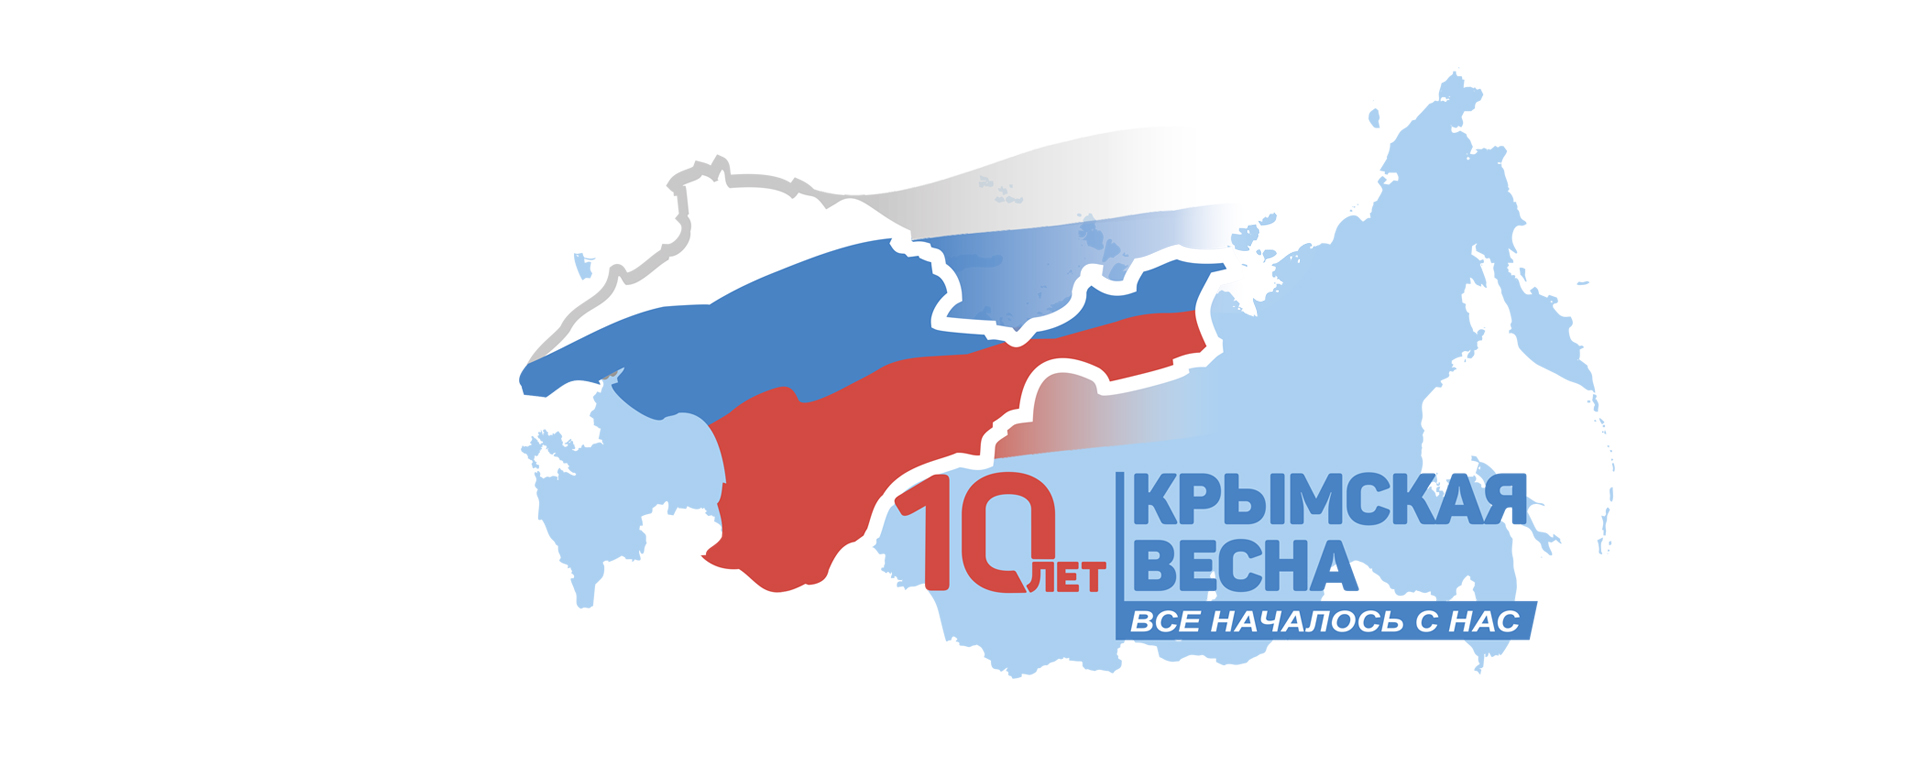 Афиша праздничных мероприятий, посвященных 10-летию Крымской весны